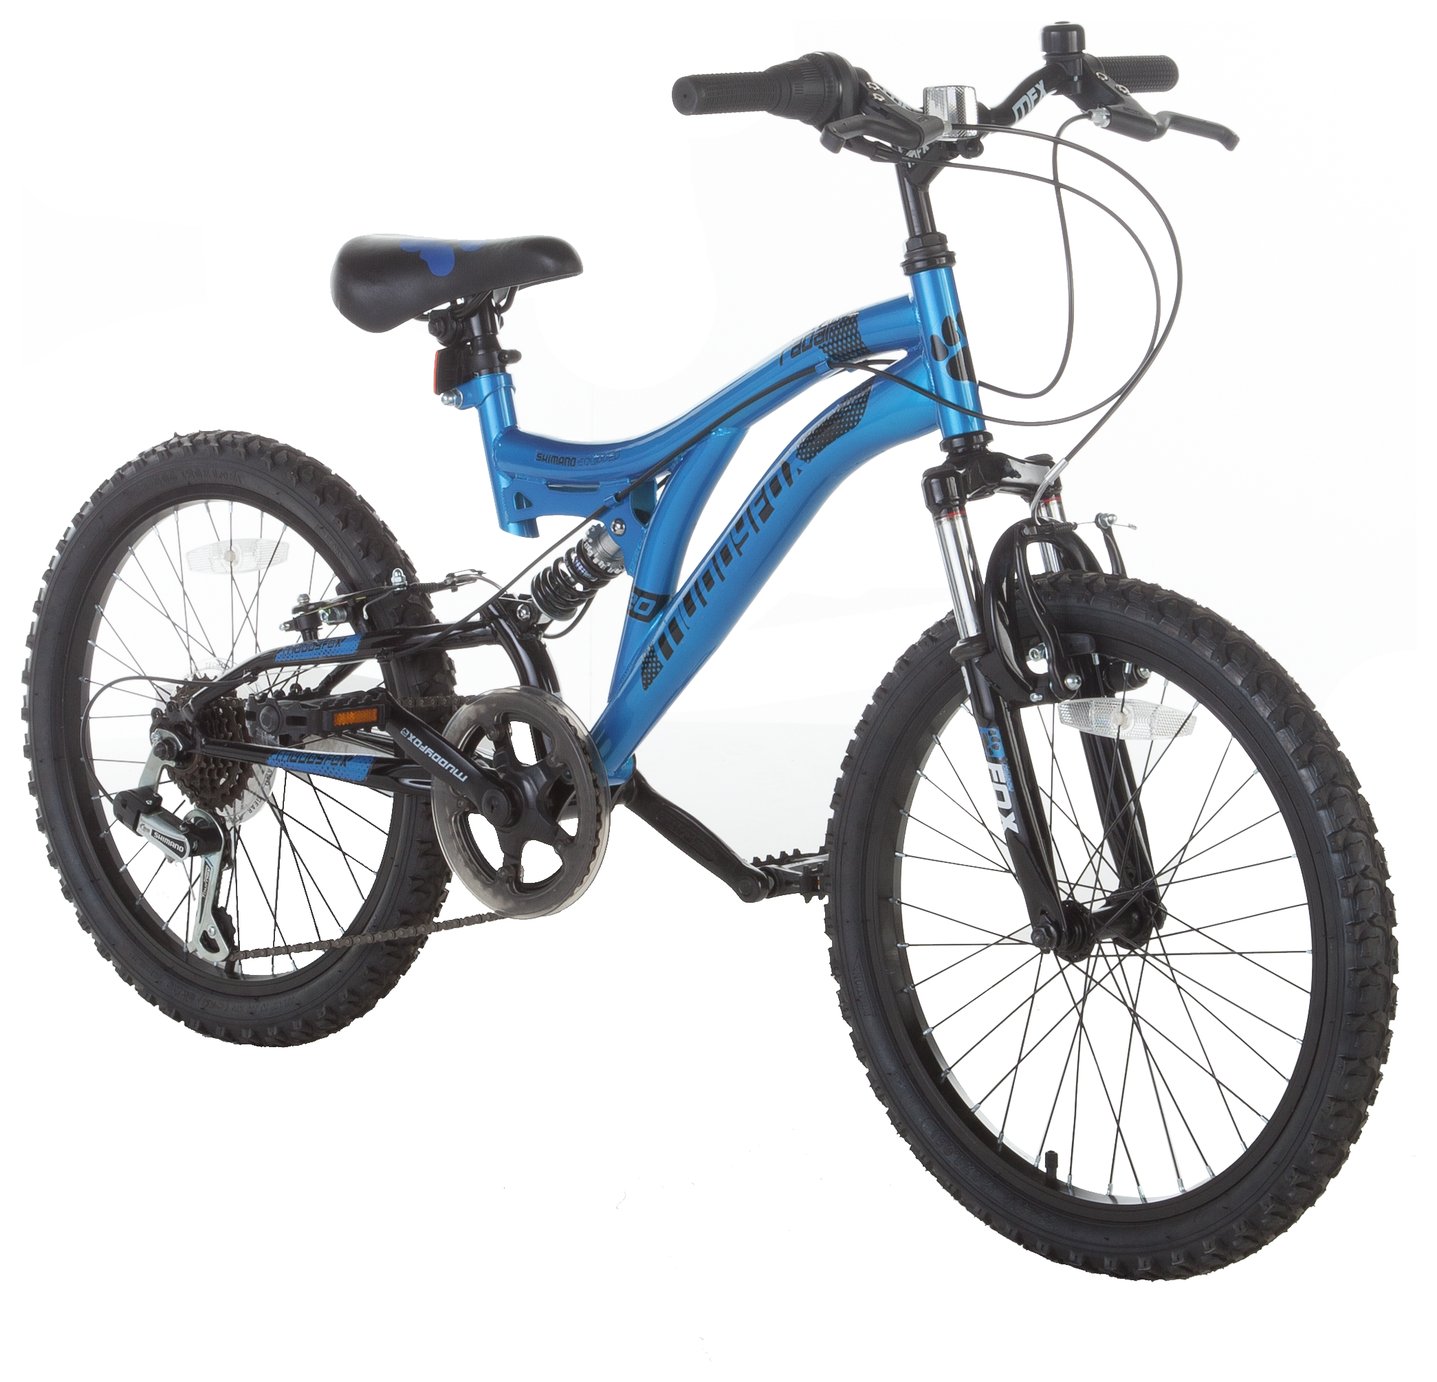 20 inch muddyfox alpha hardtail mountain bike